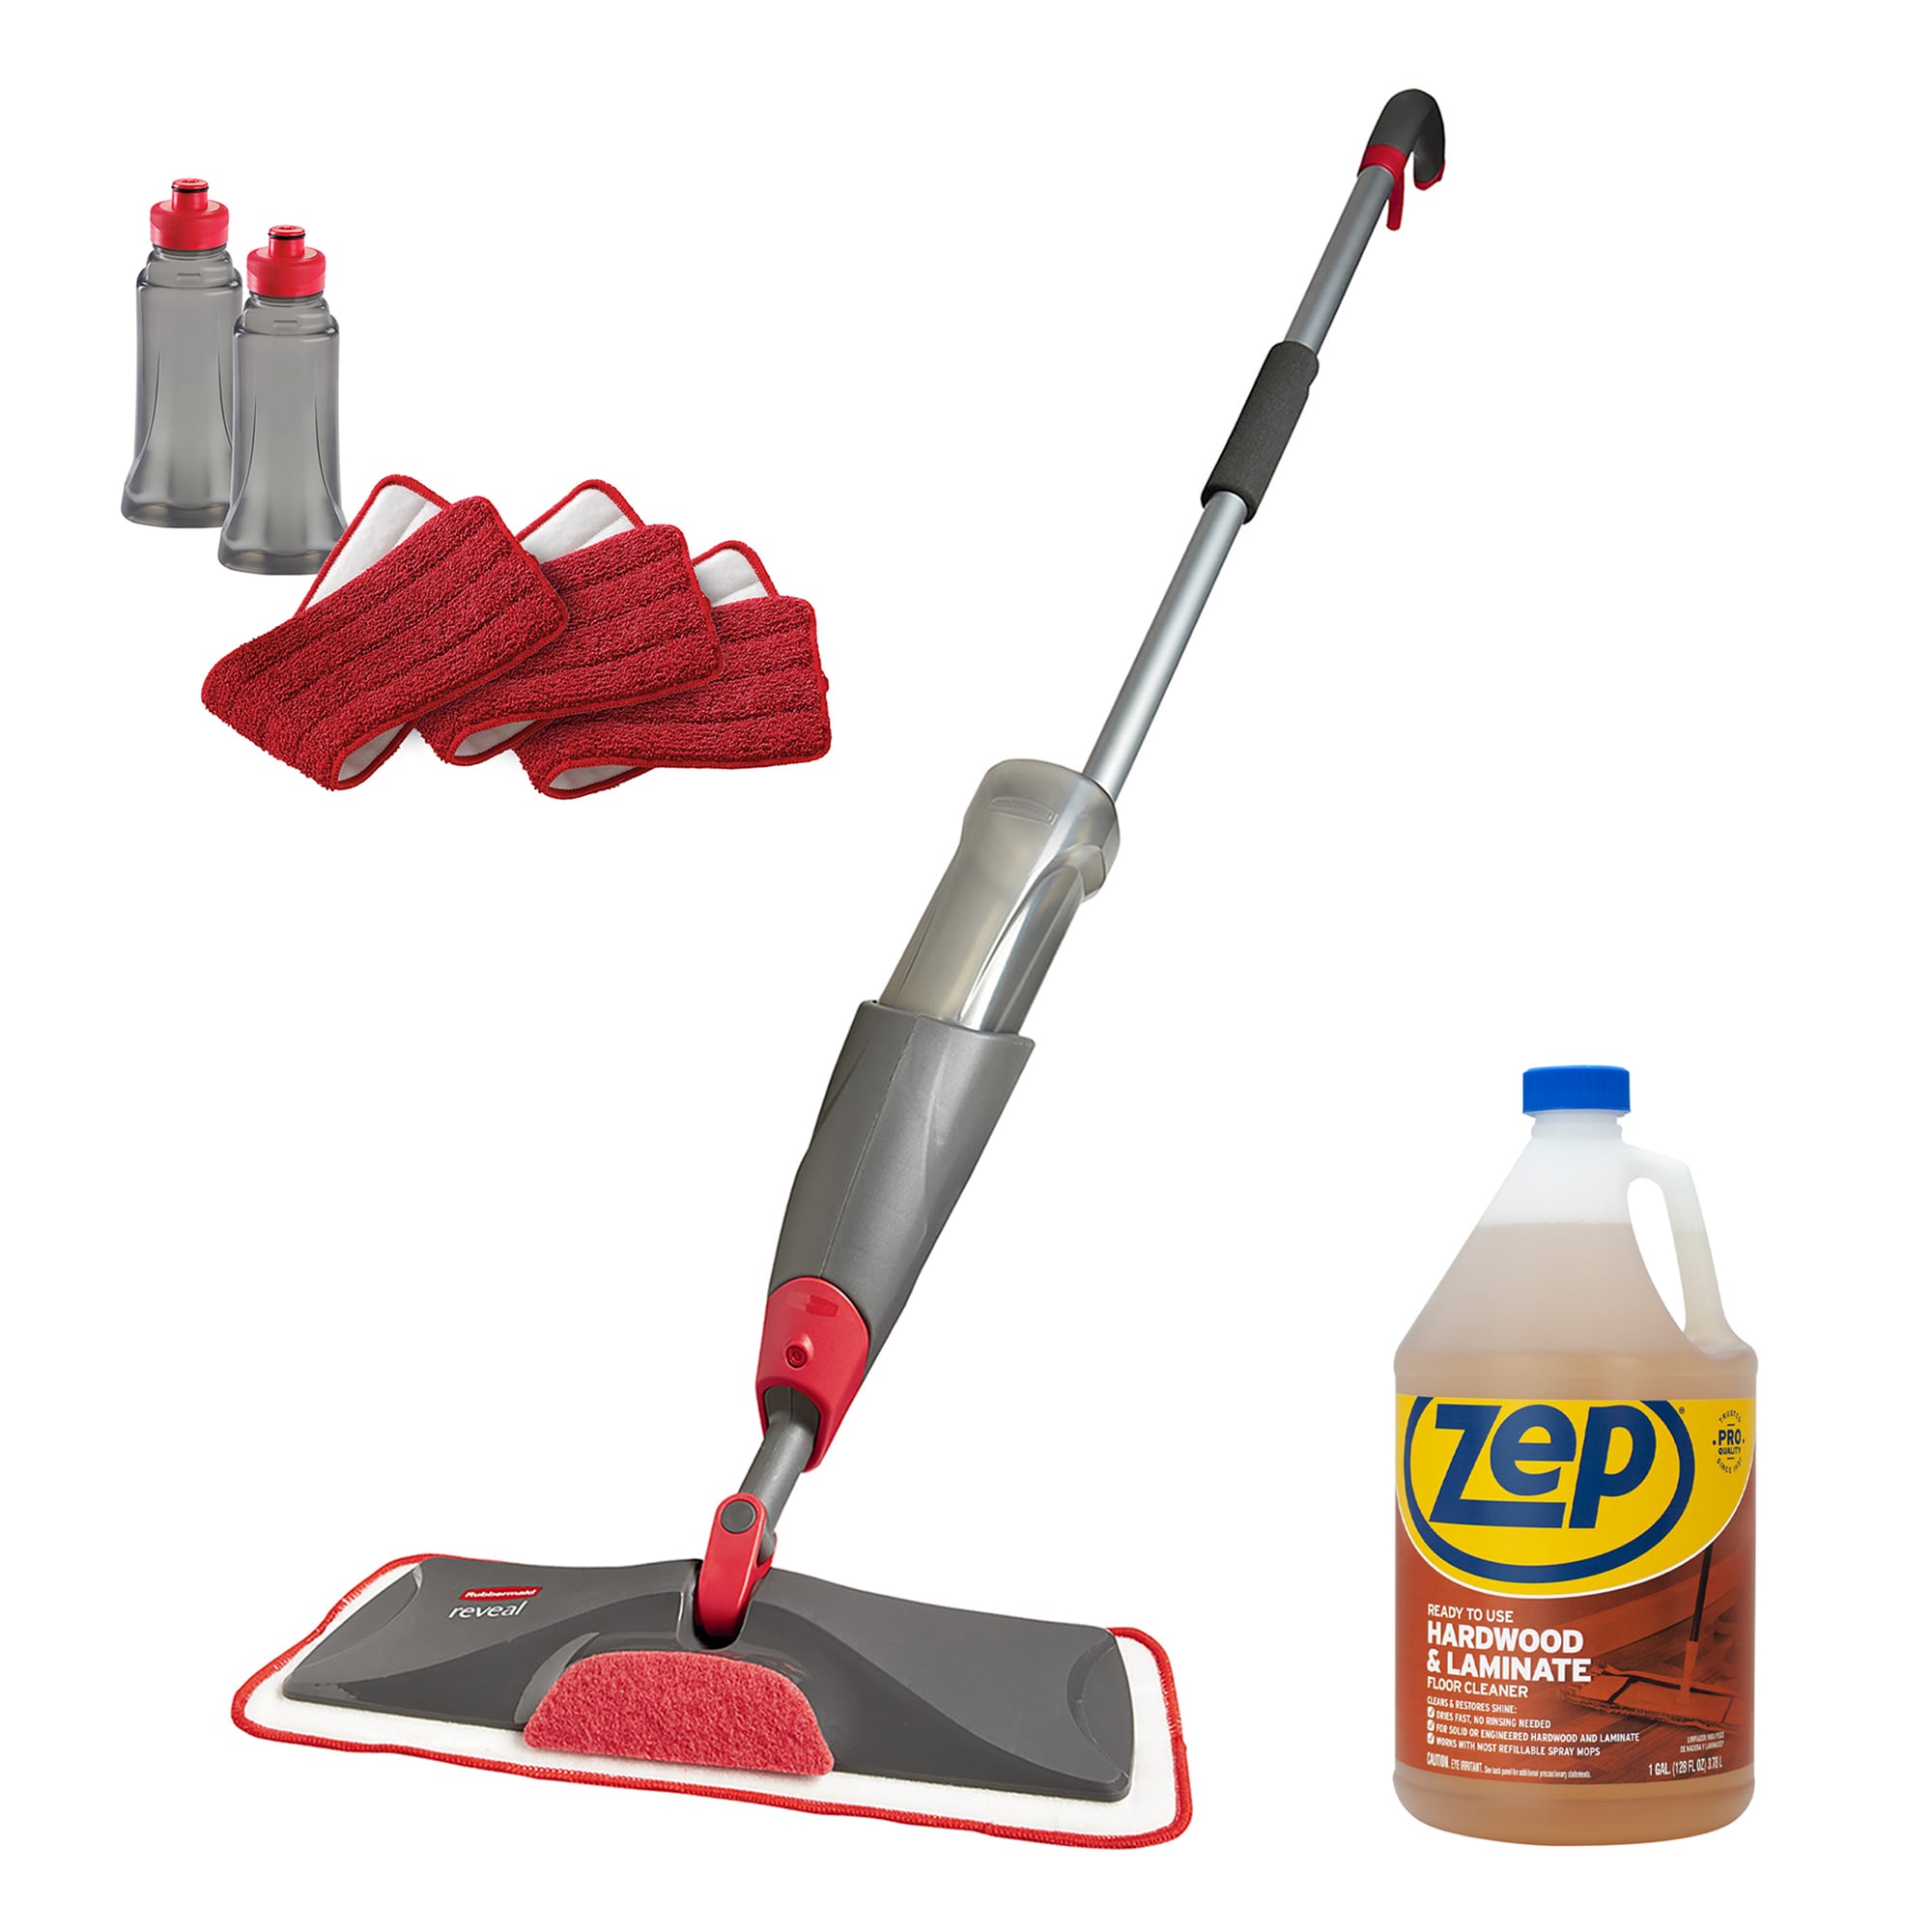 Rubbermaid Reveal Spray Mop Kit, FG1M1600GRYRD  Diy floor cleaner, Spray  mops, Floor cleaning recipe